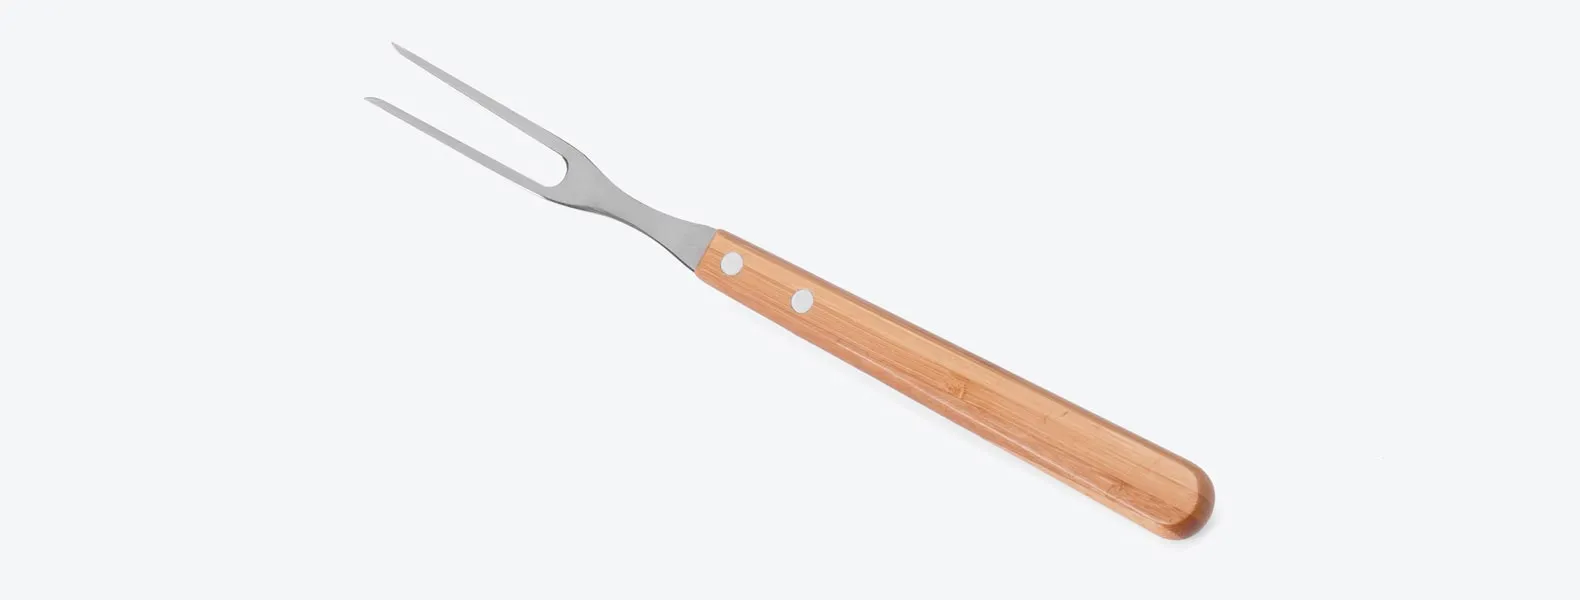 Conjunto de Faca em Bambu/Aço Inox com facas de 7 e 8'', garfo em Bambu/Inox. Como cortesia, na faca 8 fazemos uma gravação com os cortes do boi.